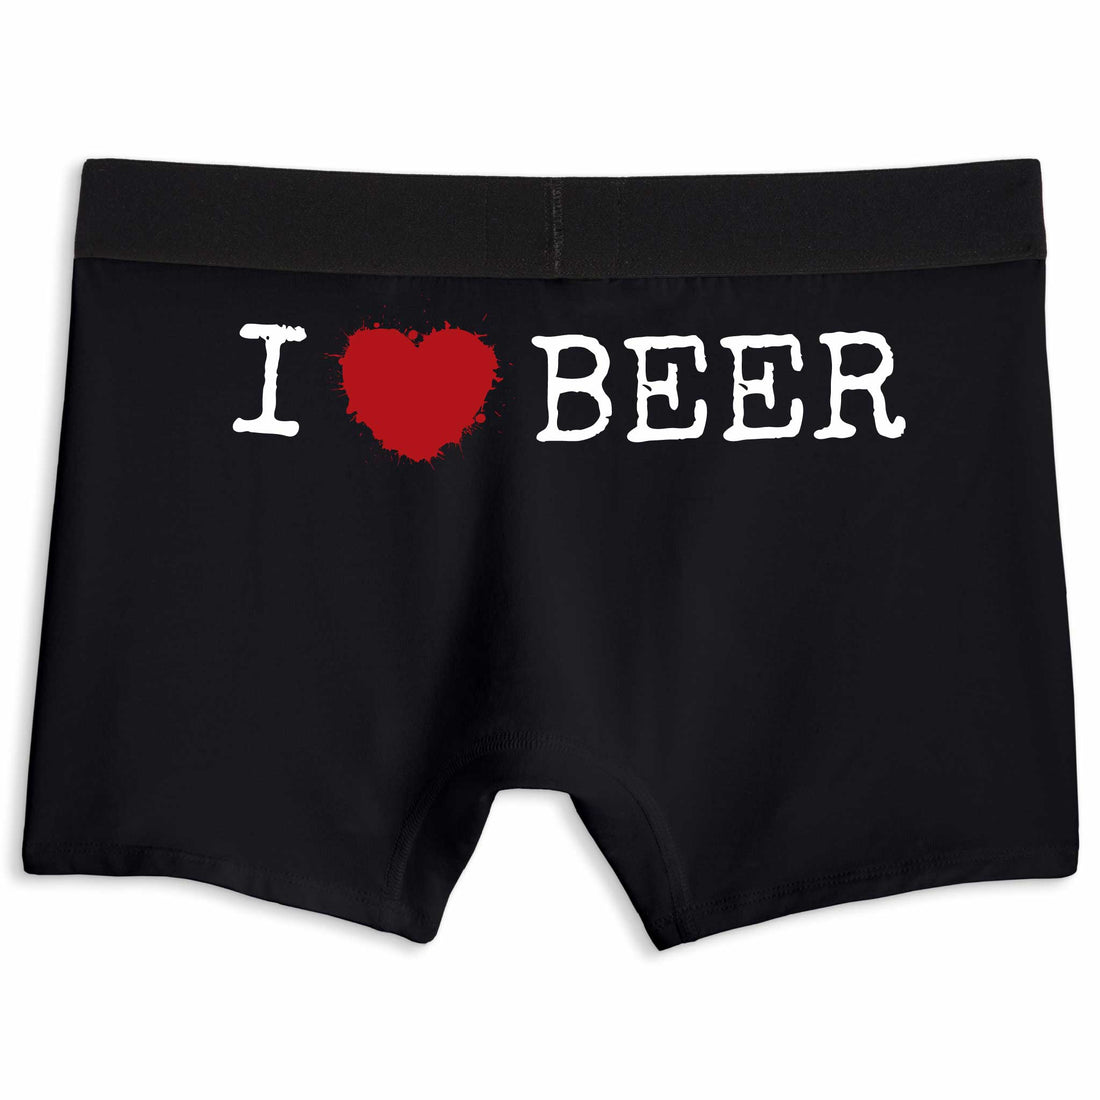 I heart beer | Boxer briefs underwear